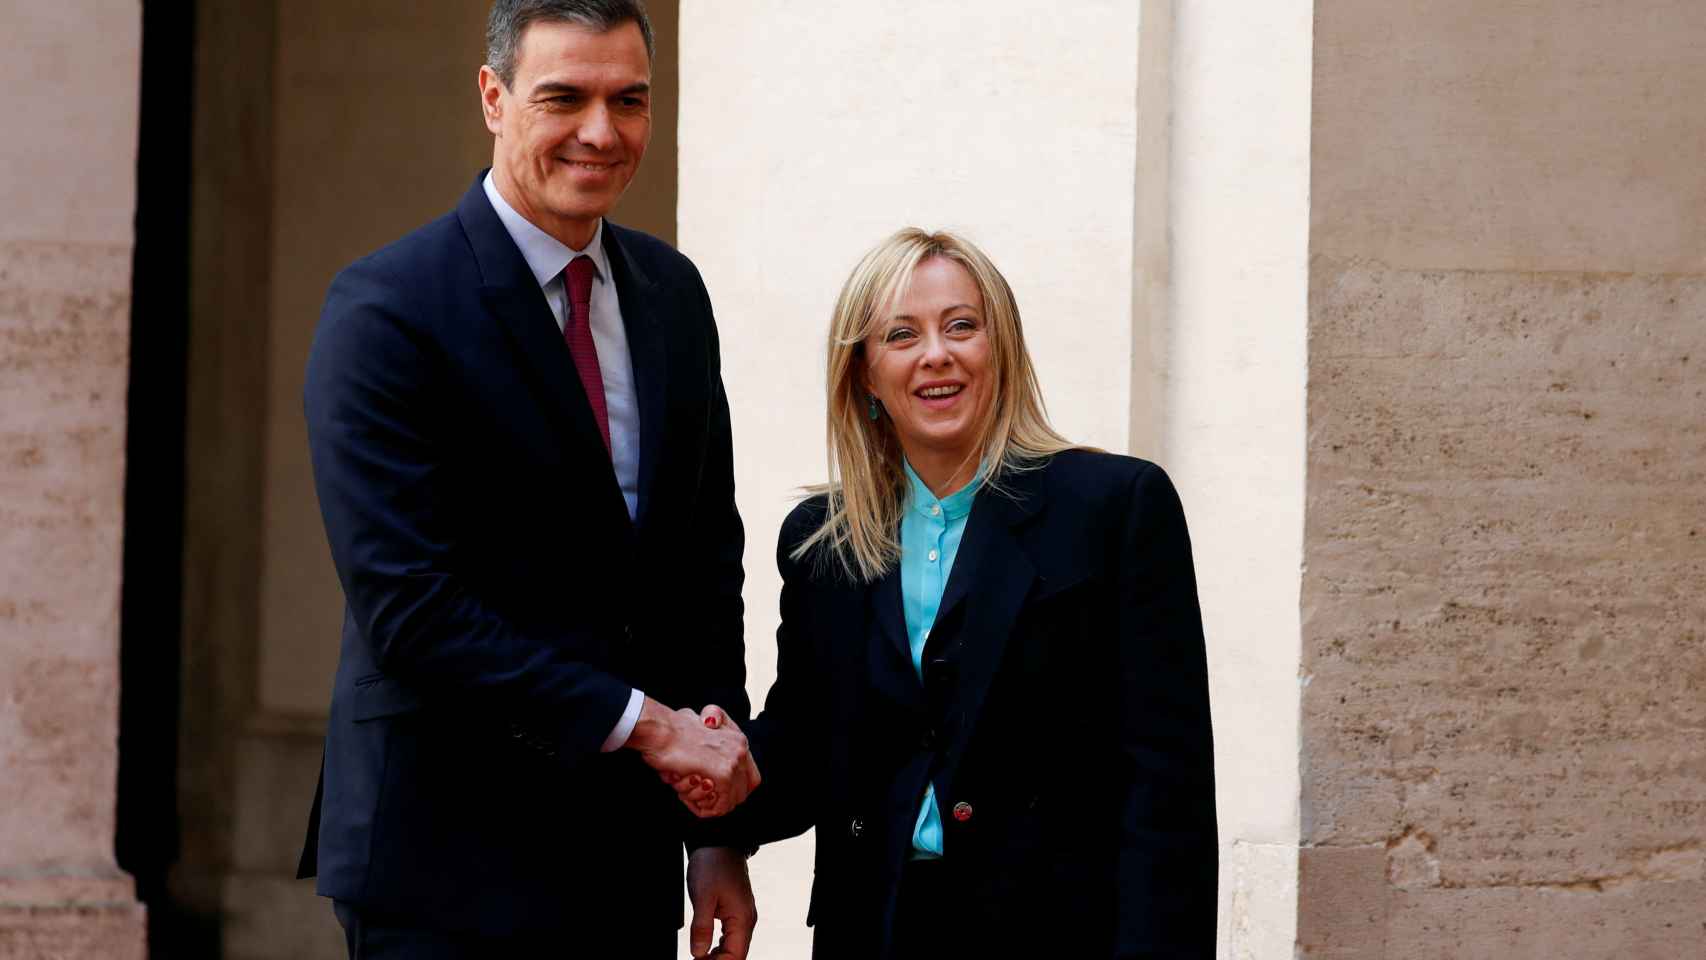 El presidente del Gobierno español, Pedro Sánchez, y su homóloga italiana, Giorgia Meloni, durante su reunión en Roma a principios de abril.